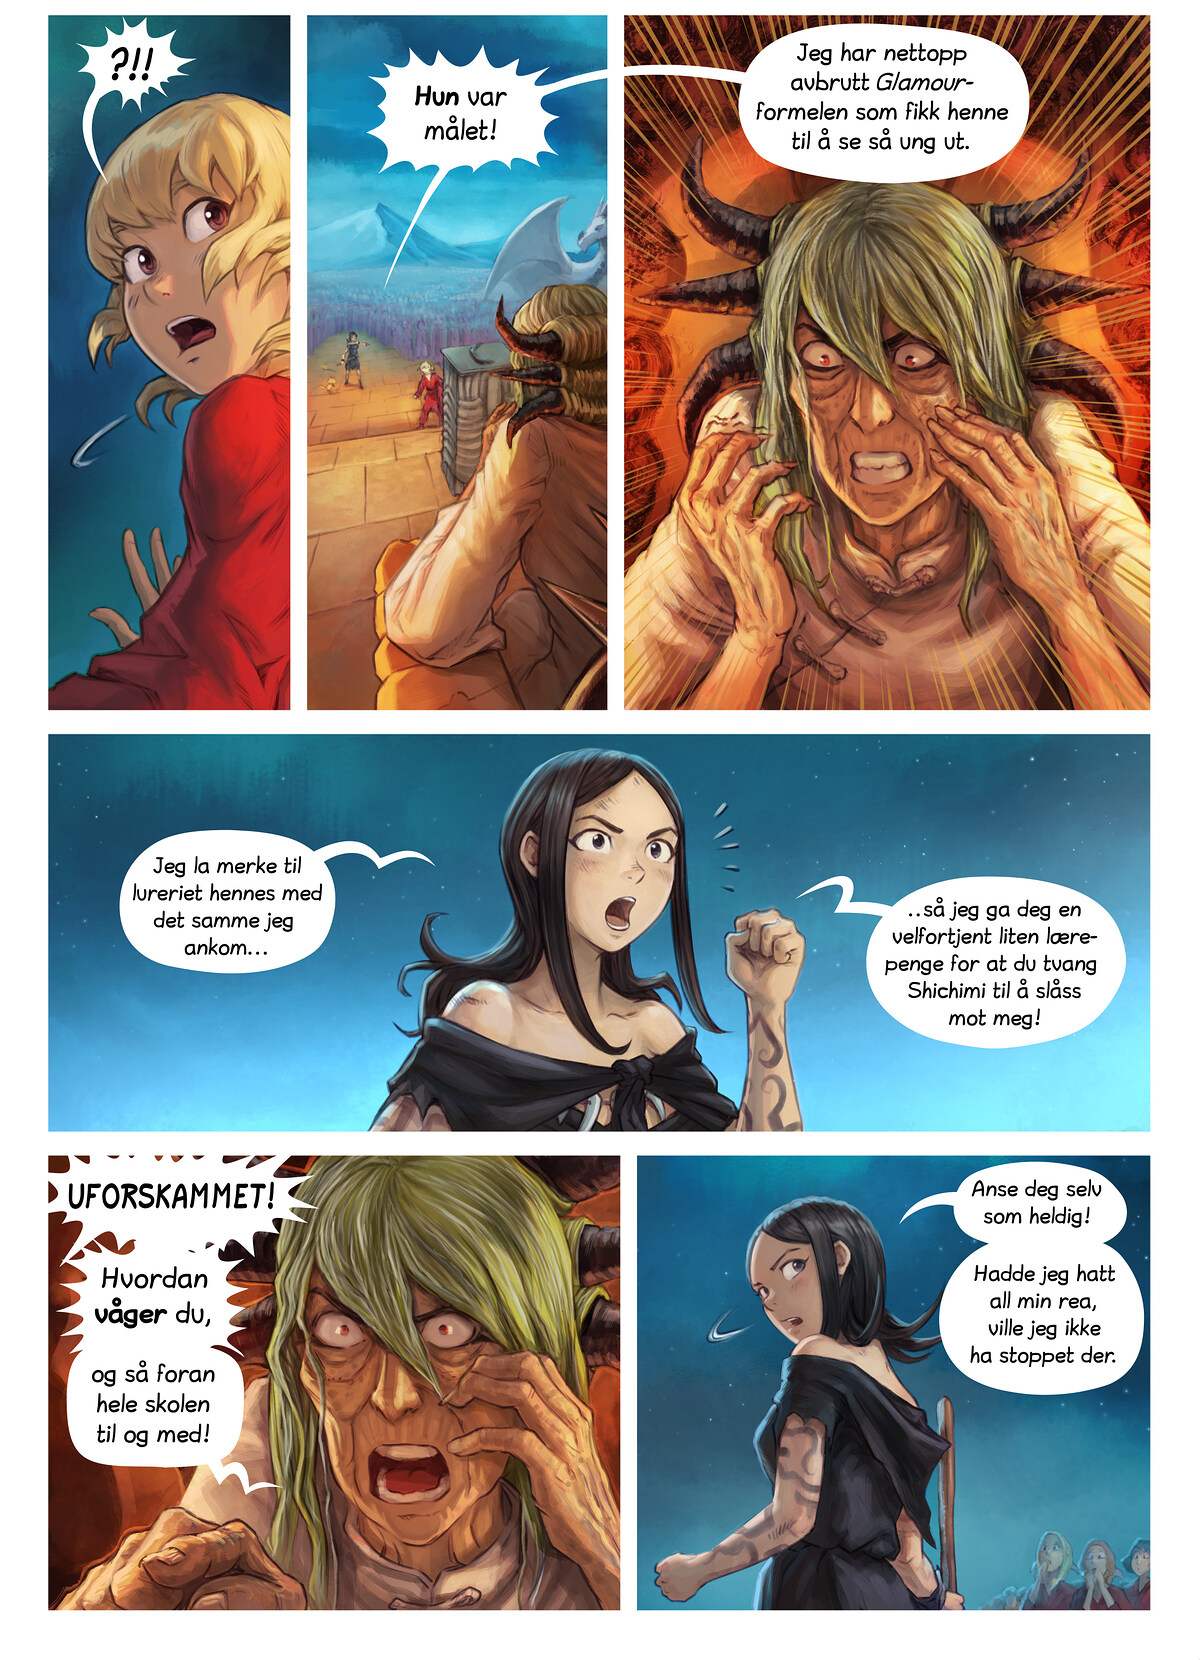 Episode 34: Shichimi slås til ridder, Page 8